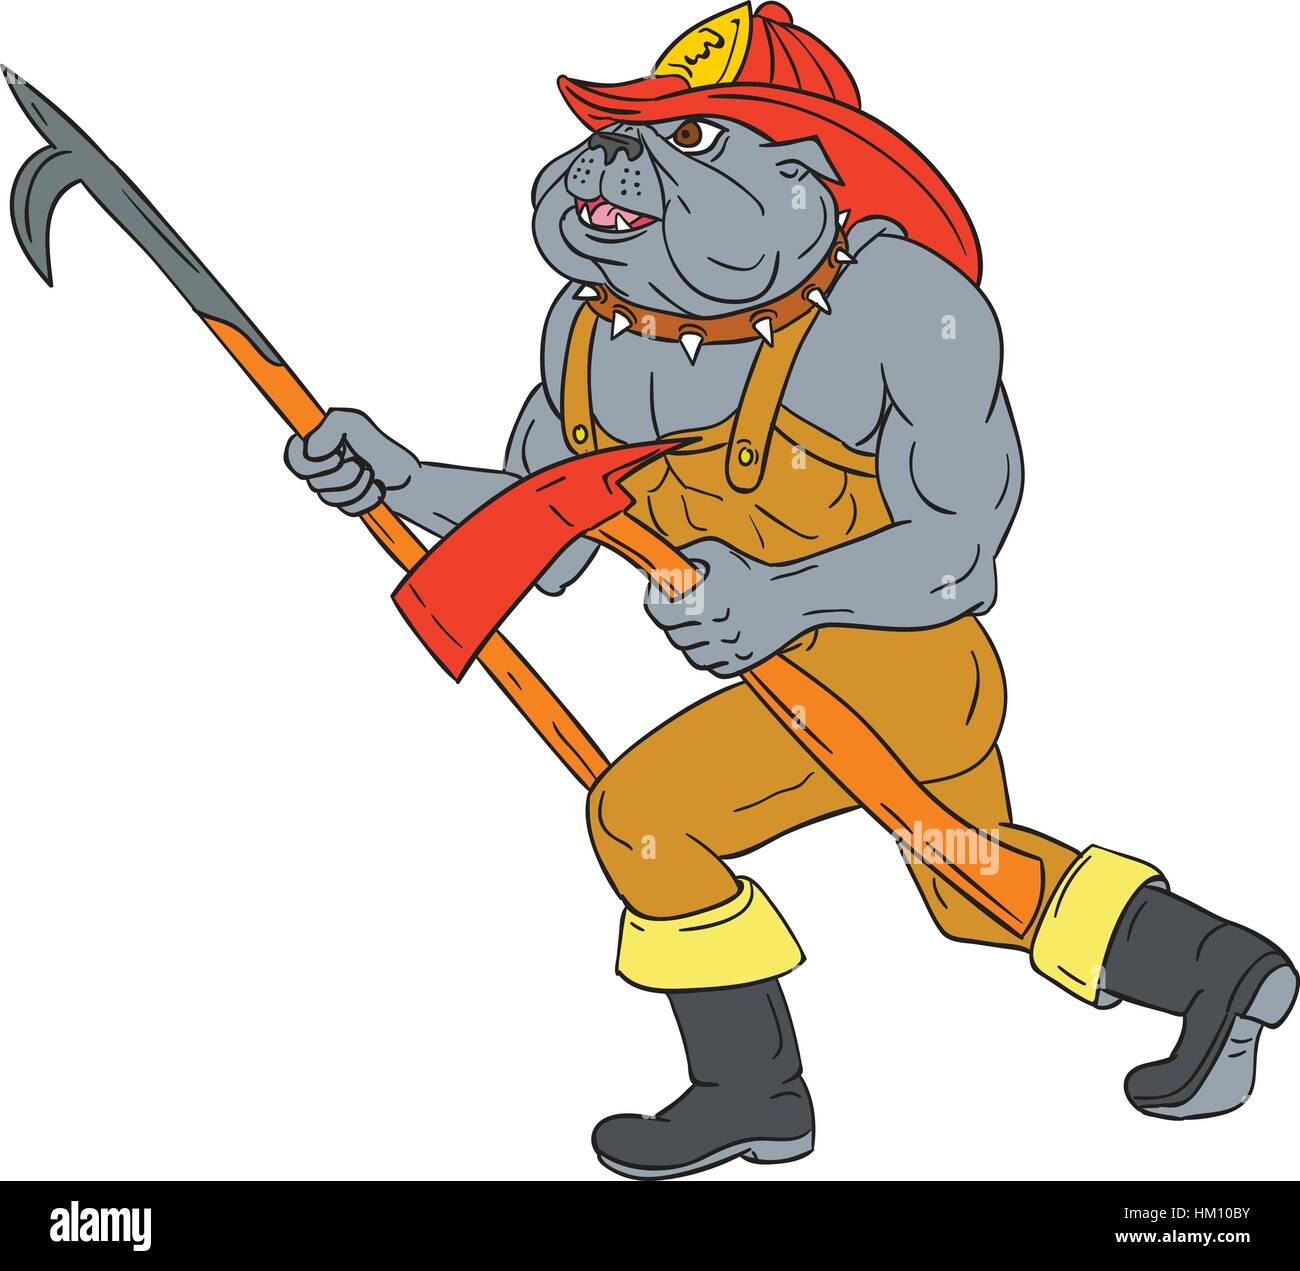 Zeichnung Skizze Stil Illustration der Bulldog Feuerwehrmann Feuerwehrmann hält Hecht poke und Feuer Axt zu Fuß der Seitenansicht auf isolierten weißen backg Stock Vektor